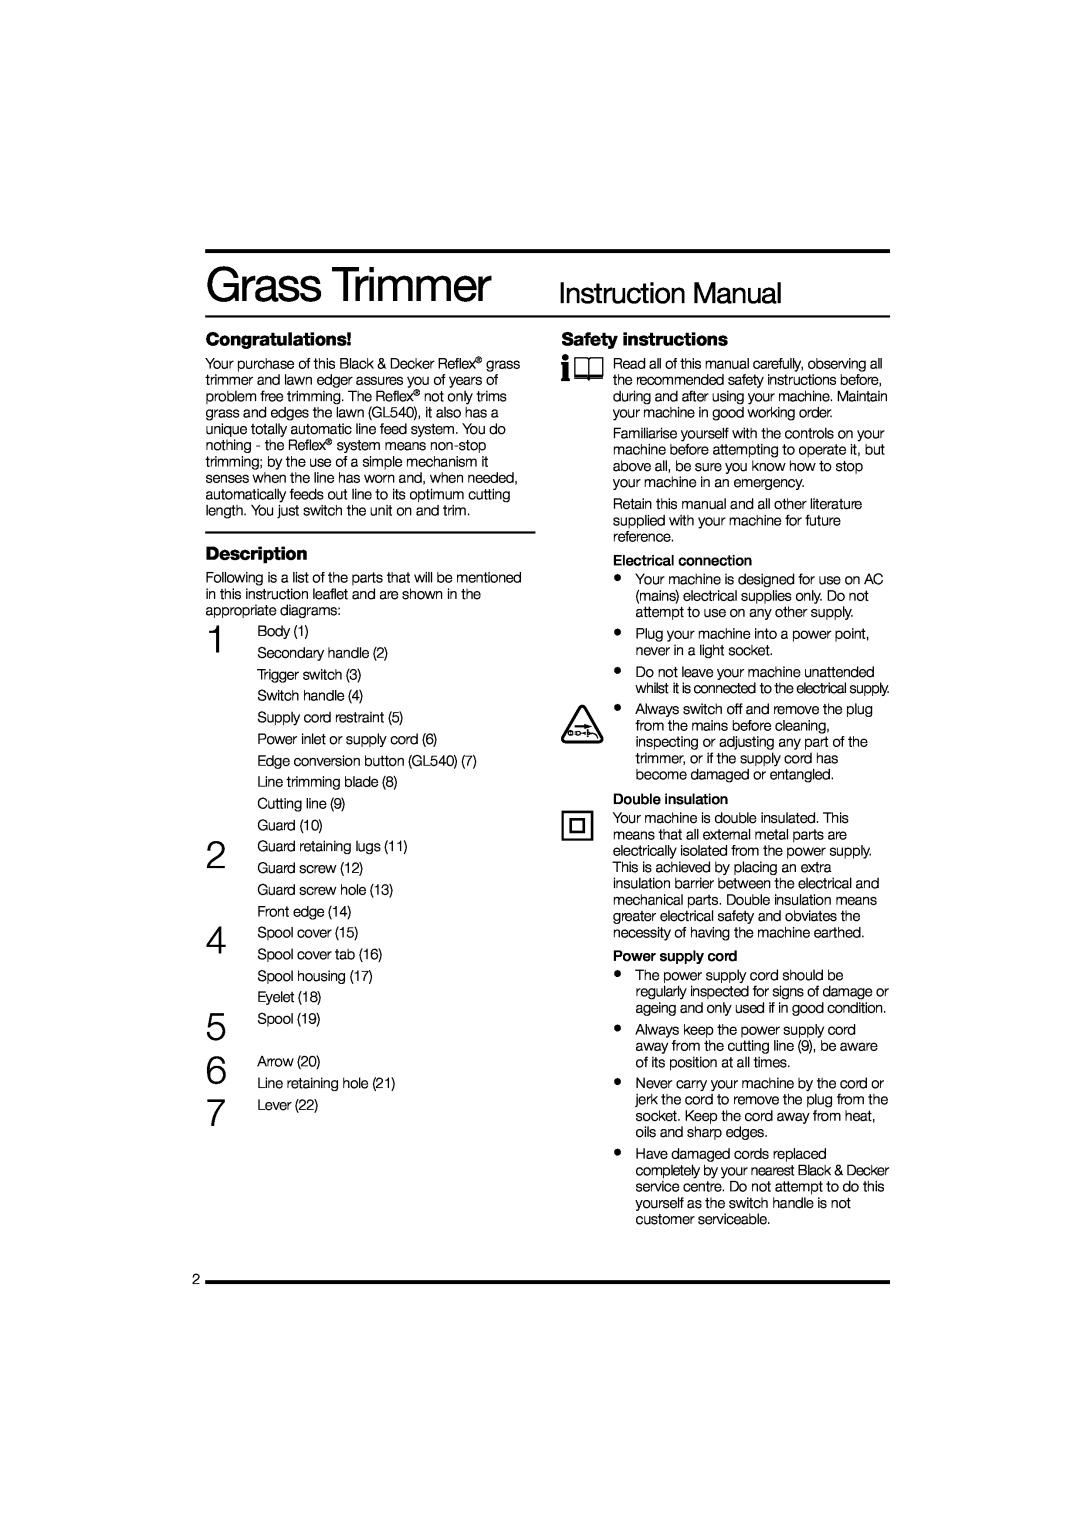 Black & Decker GL530 instruction manual Grass Trimmer Instruction Manual, Congratulations, Description 